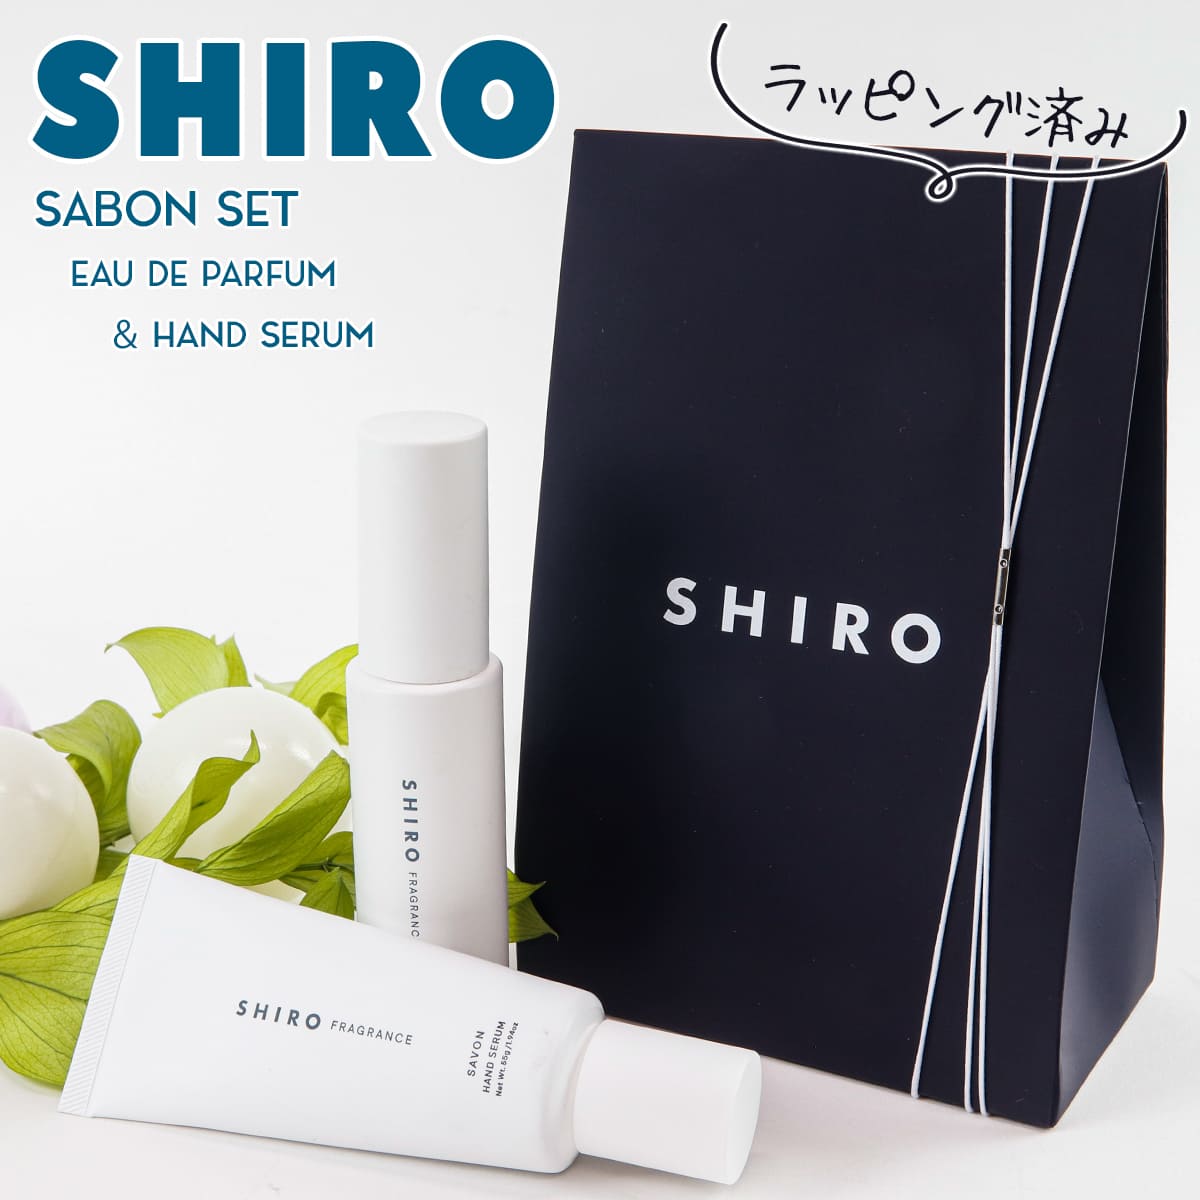 【サボン アドバンスドセット】 shiro サボン 香水 & ハンド美容液 オードパルファン 化粧品 40ml サボン ハンド美容…